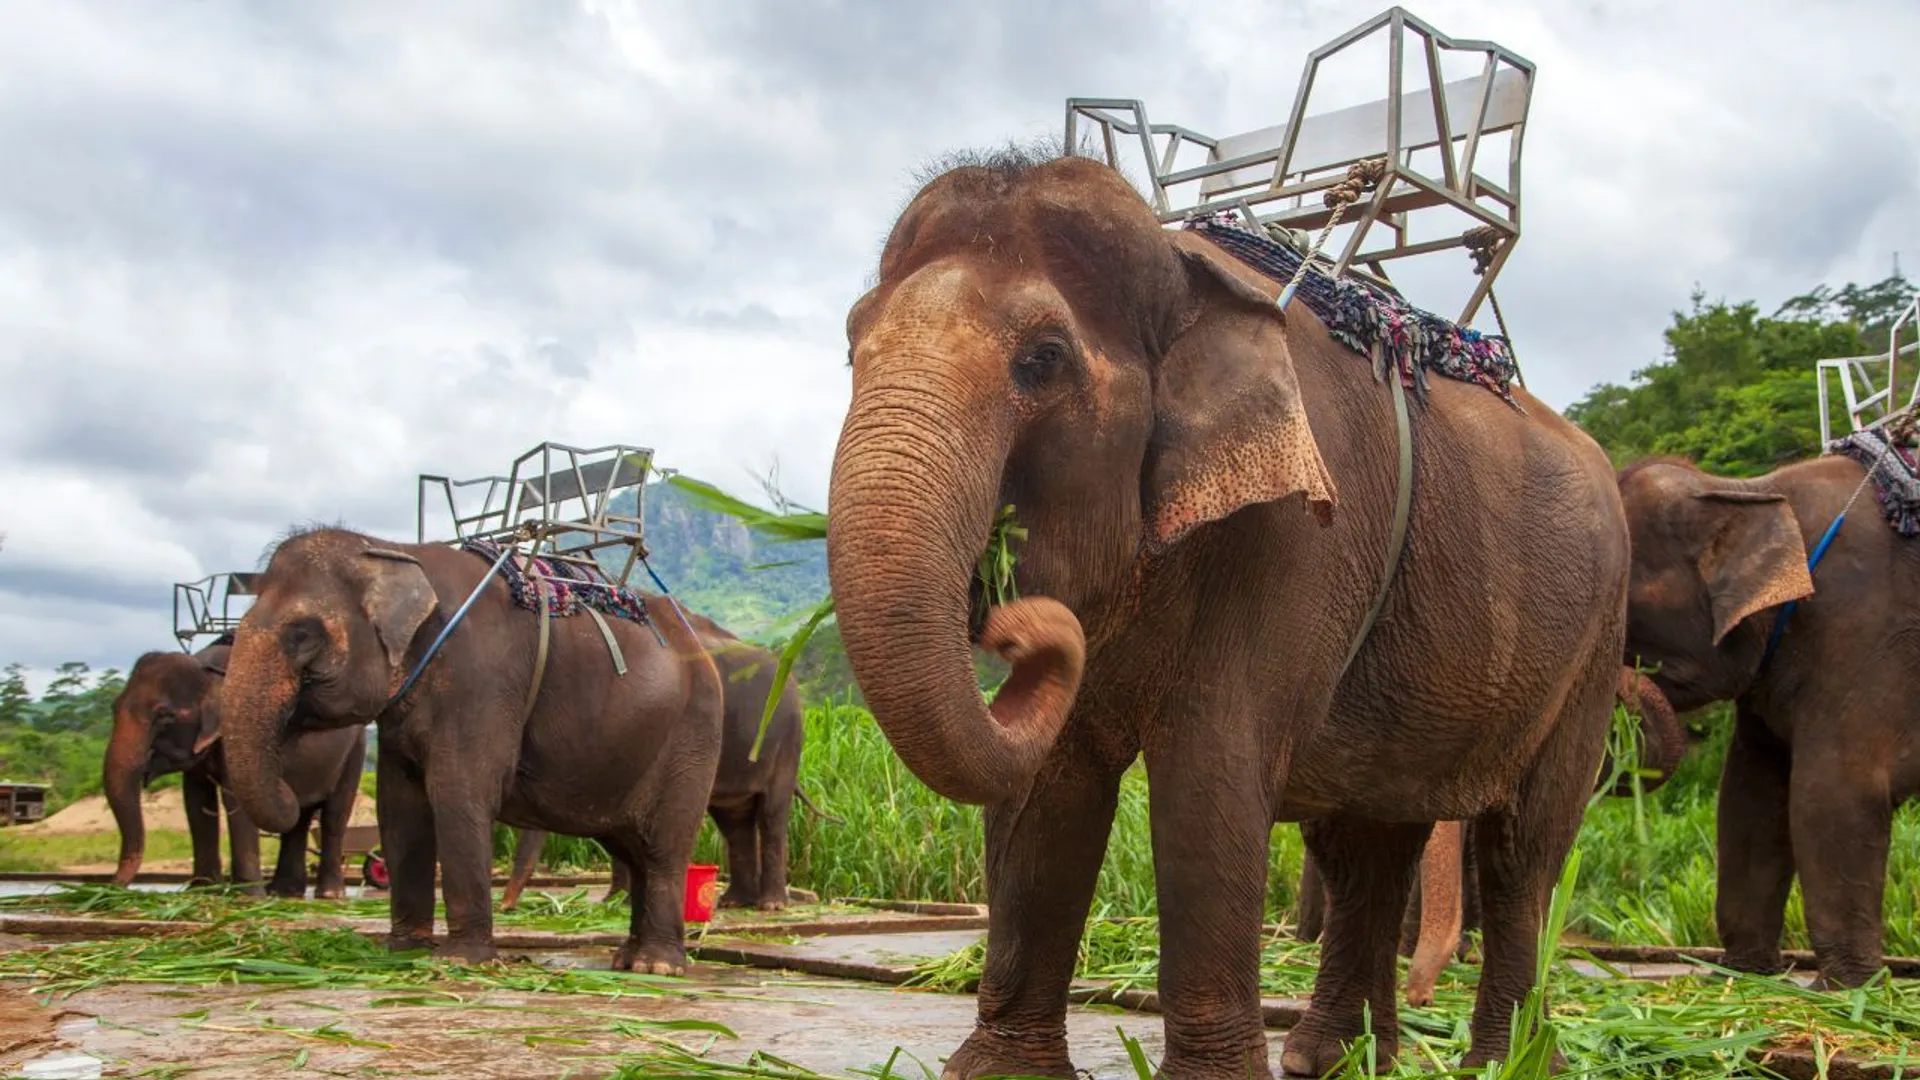 Podróże śladami zwierząt: Mroczna strona turystycznych atrakcji ze słoniami